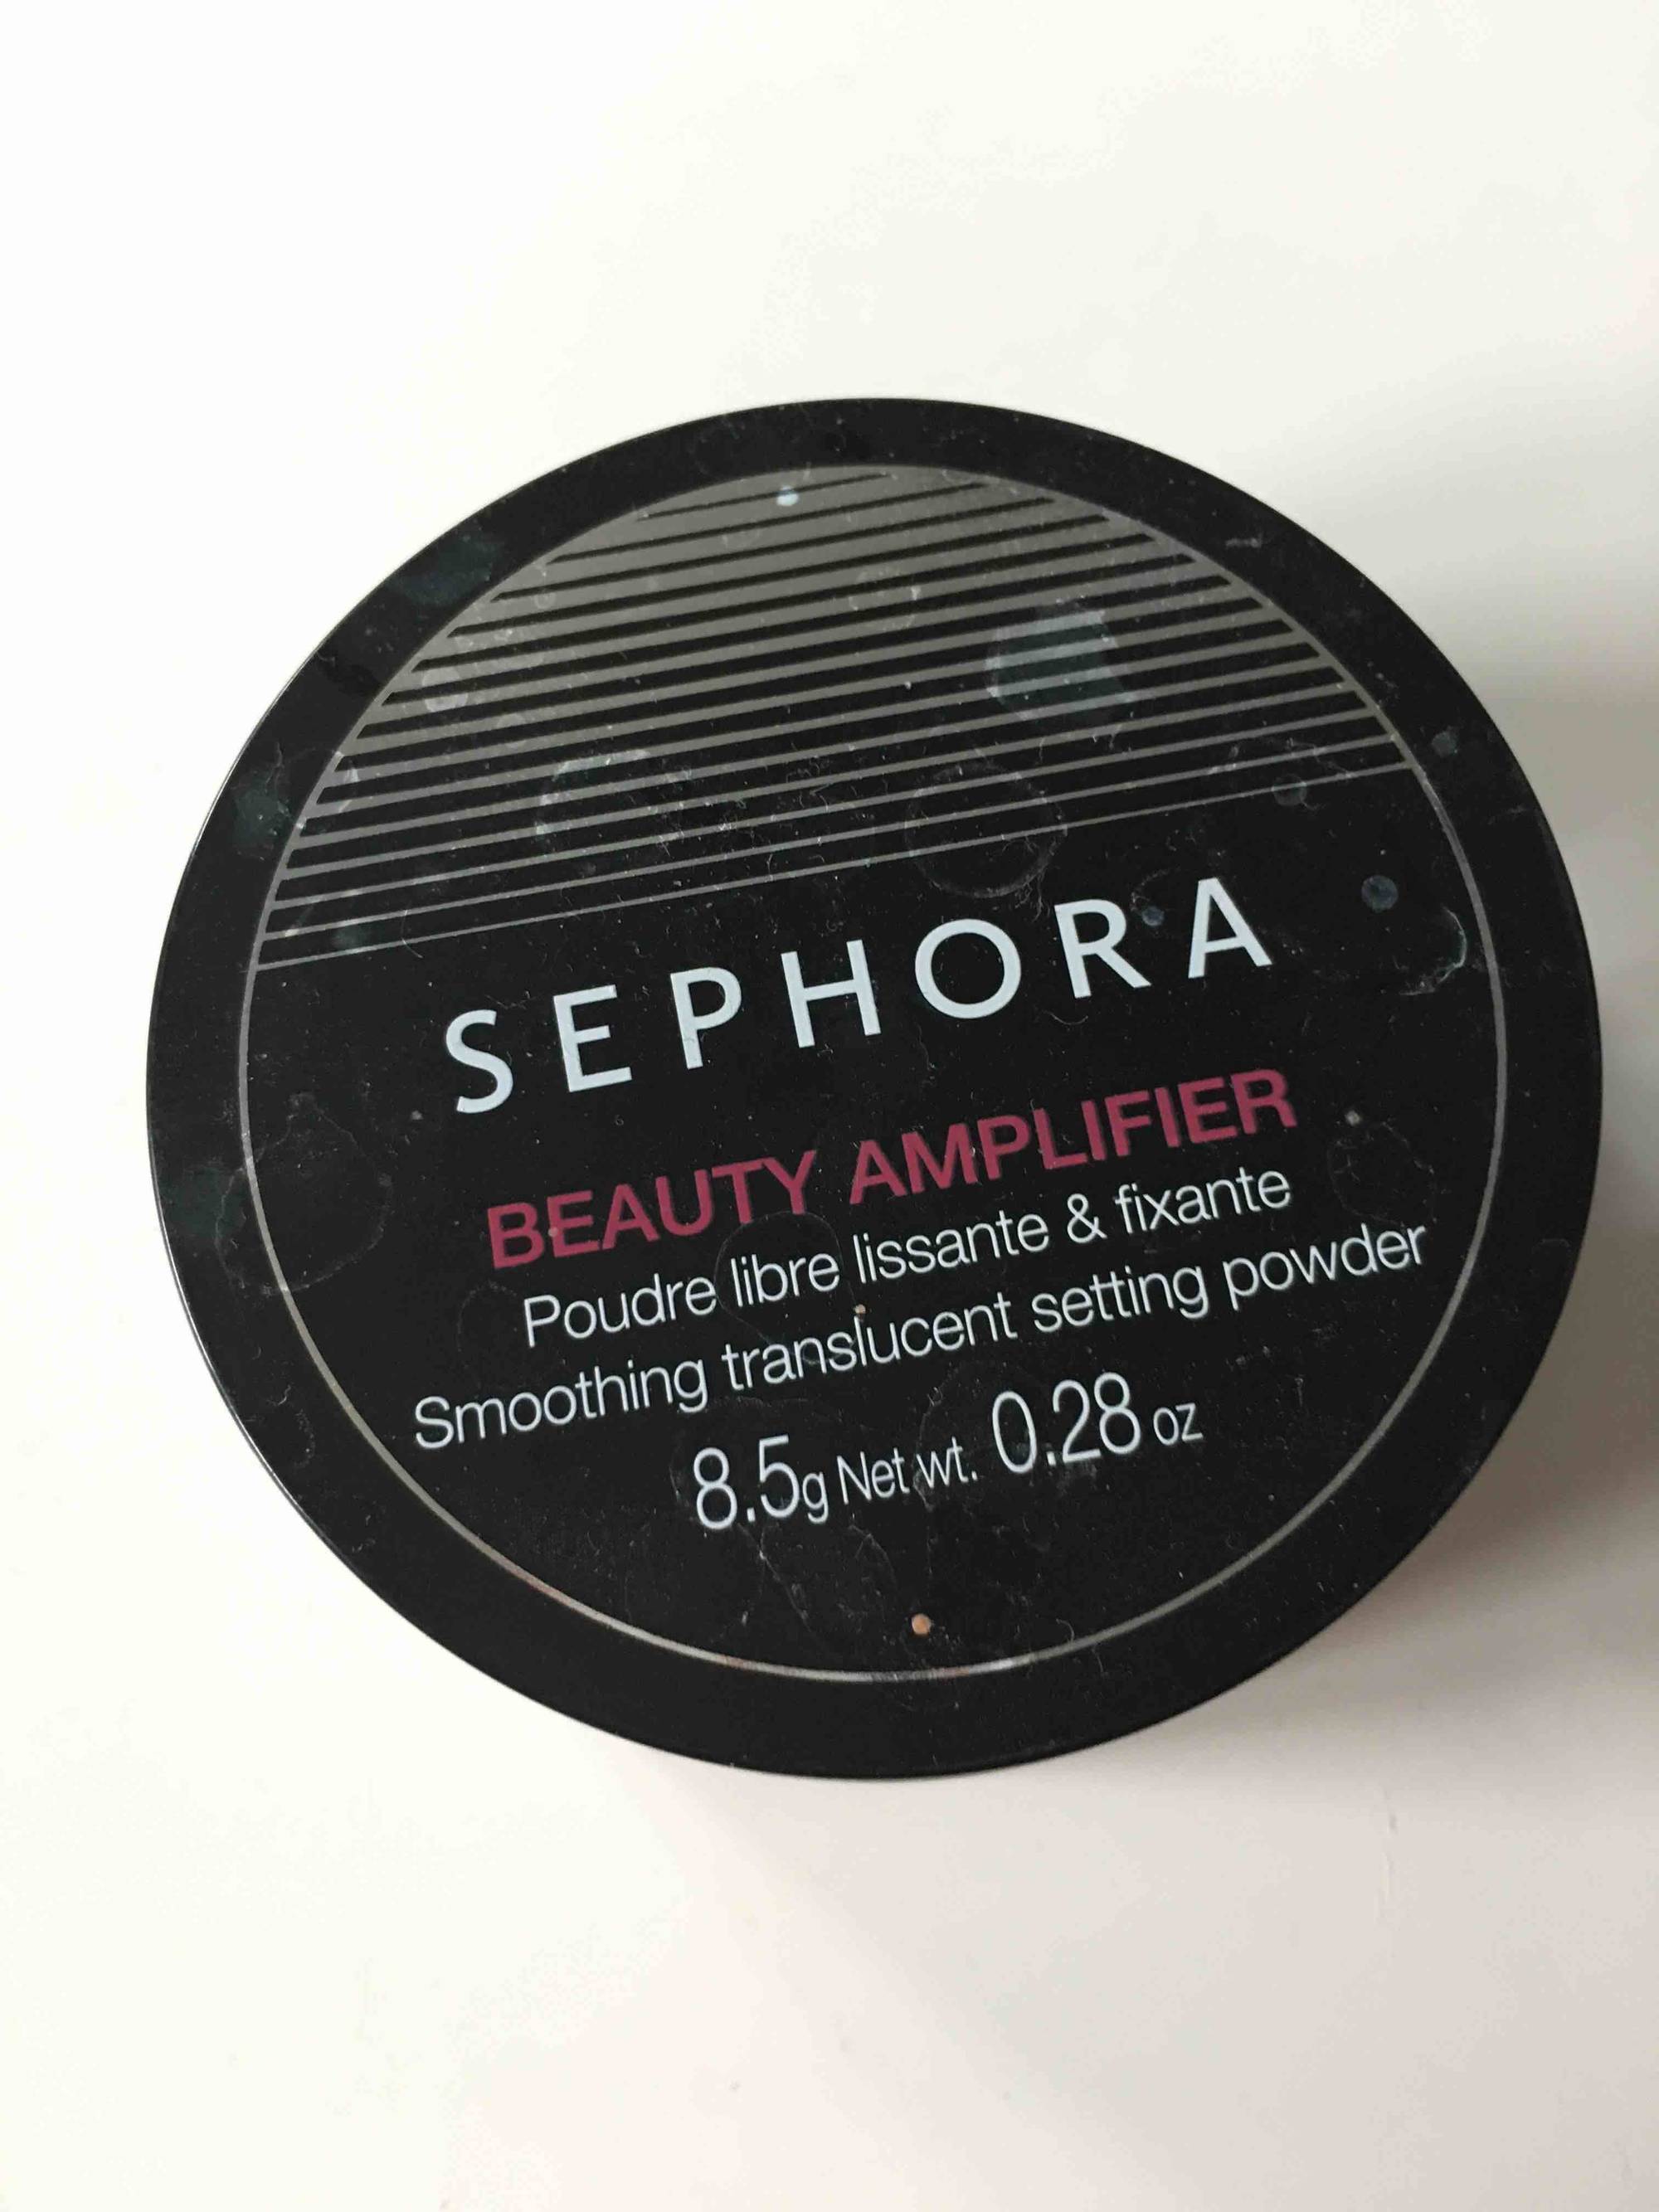 SEPHORA - Beauty amplifier - Poudre libre lissante et fixante incolore